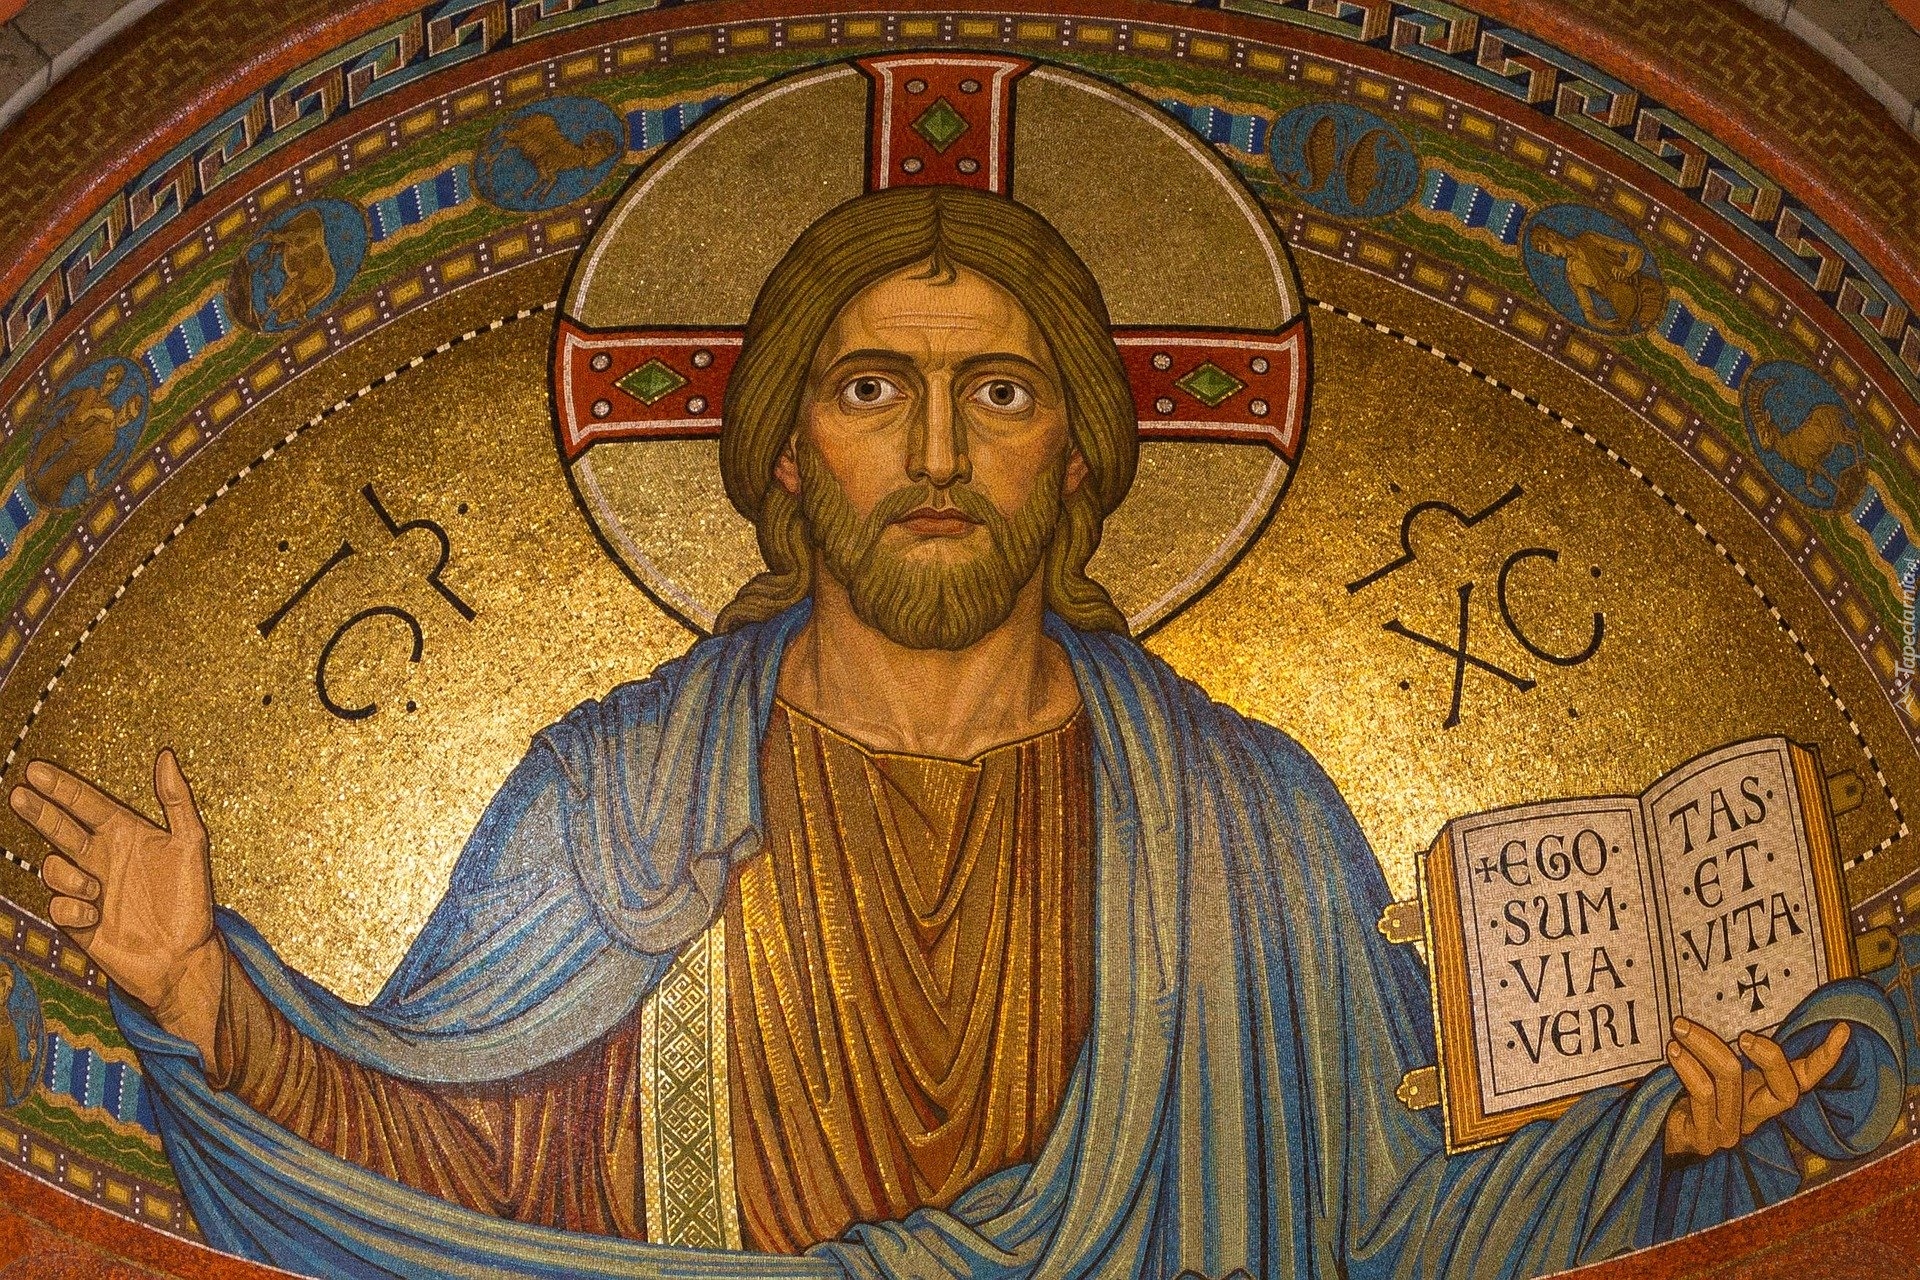 Jezus Chrystus, Mozaika